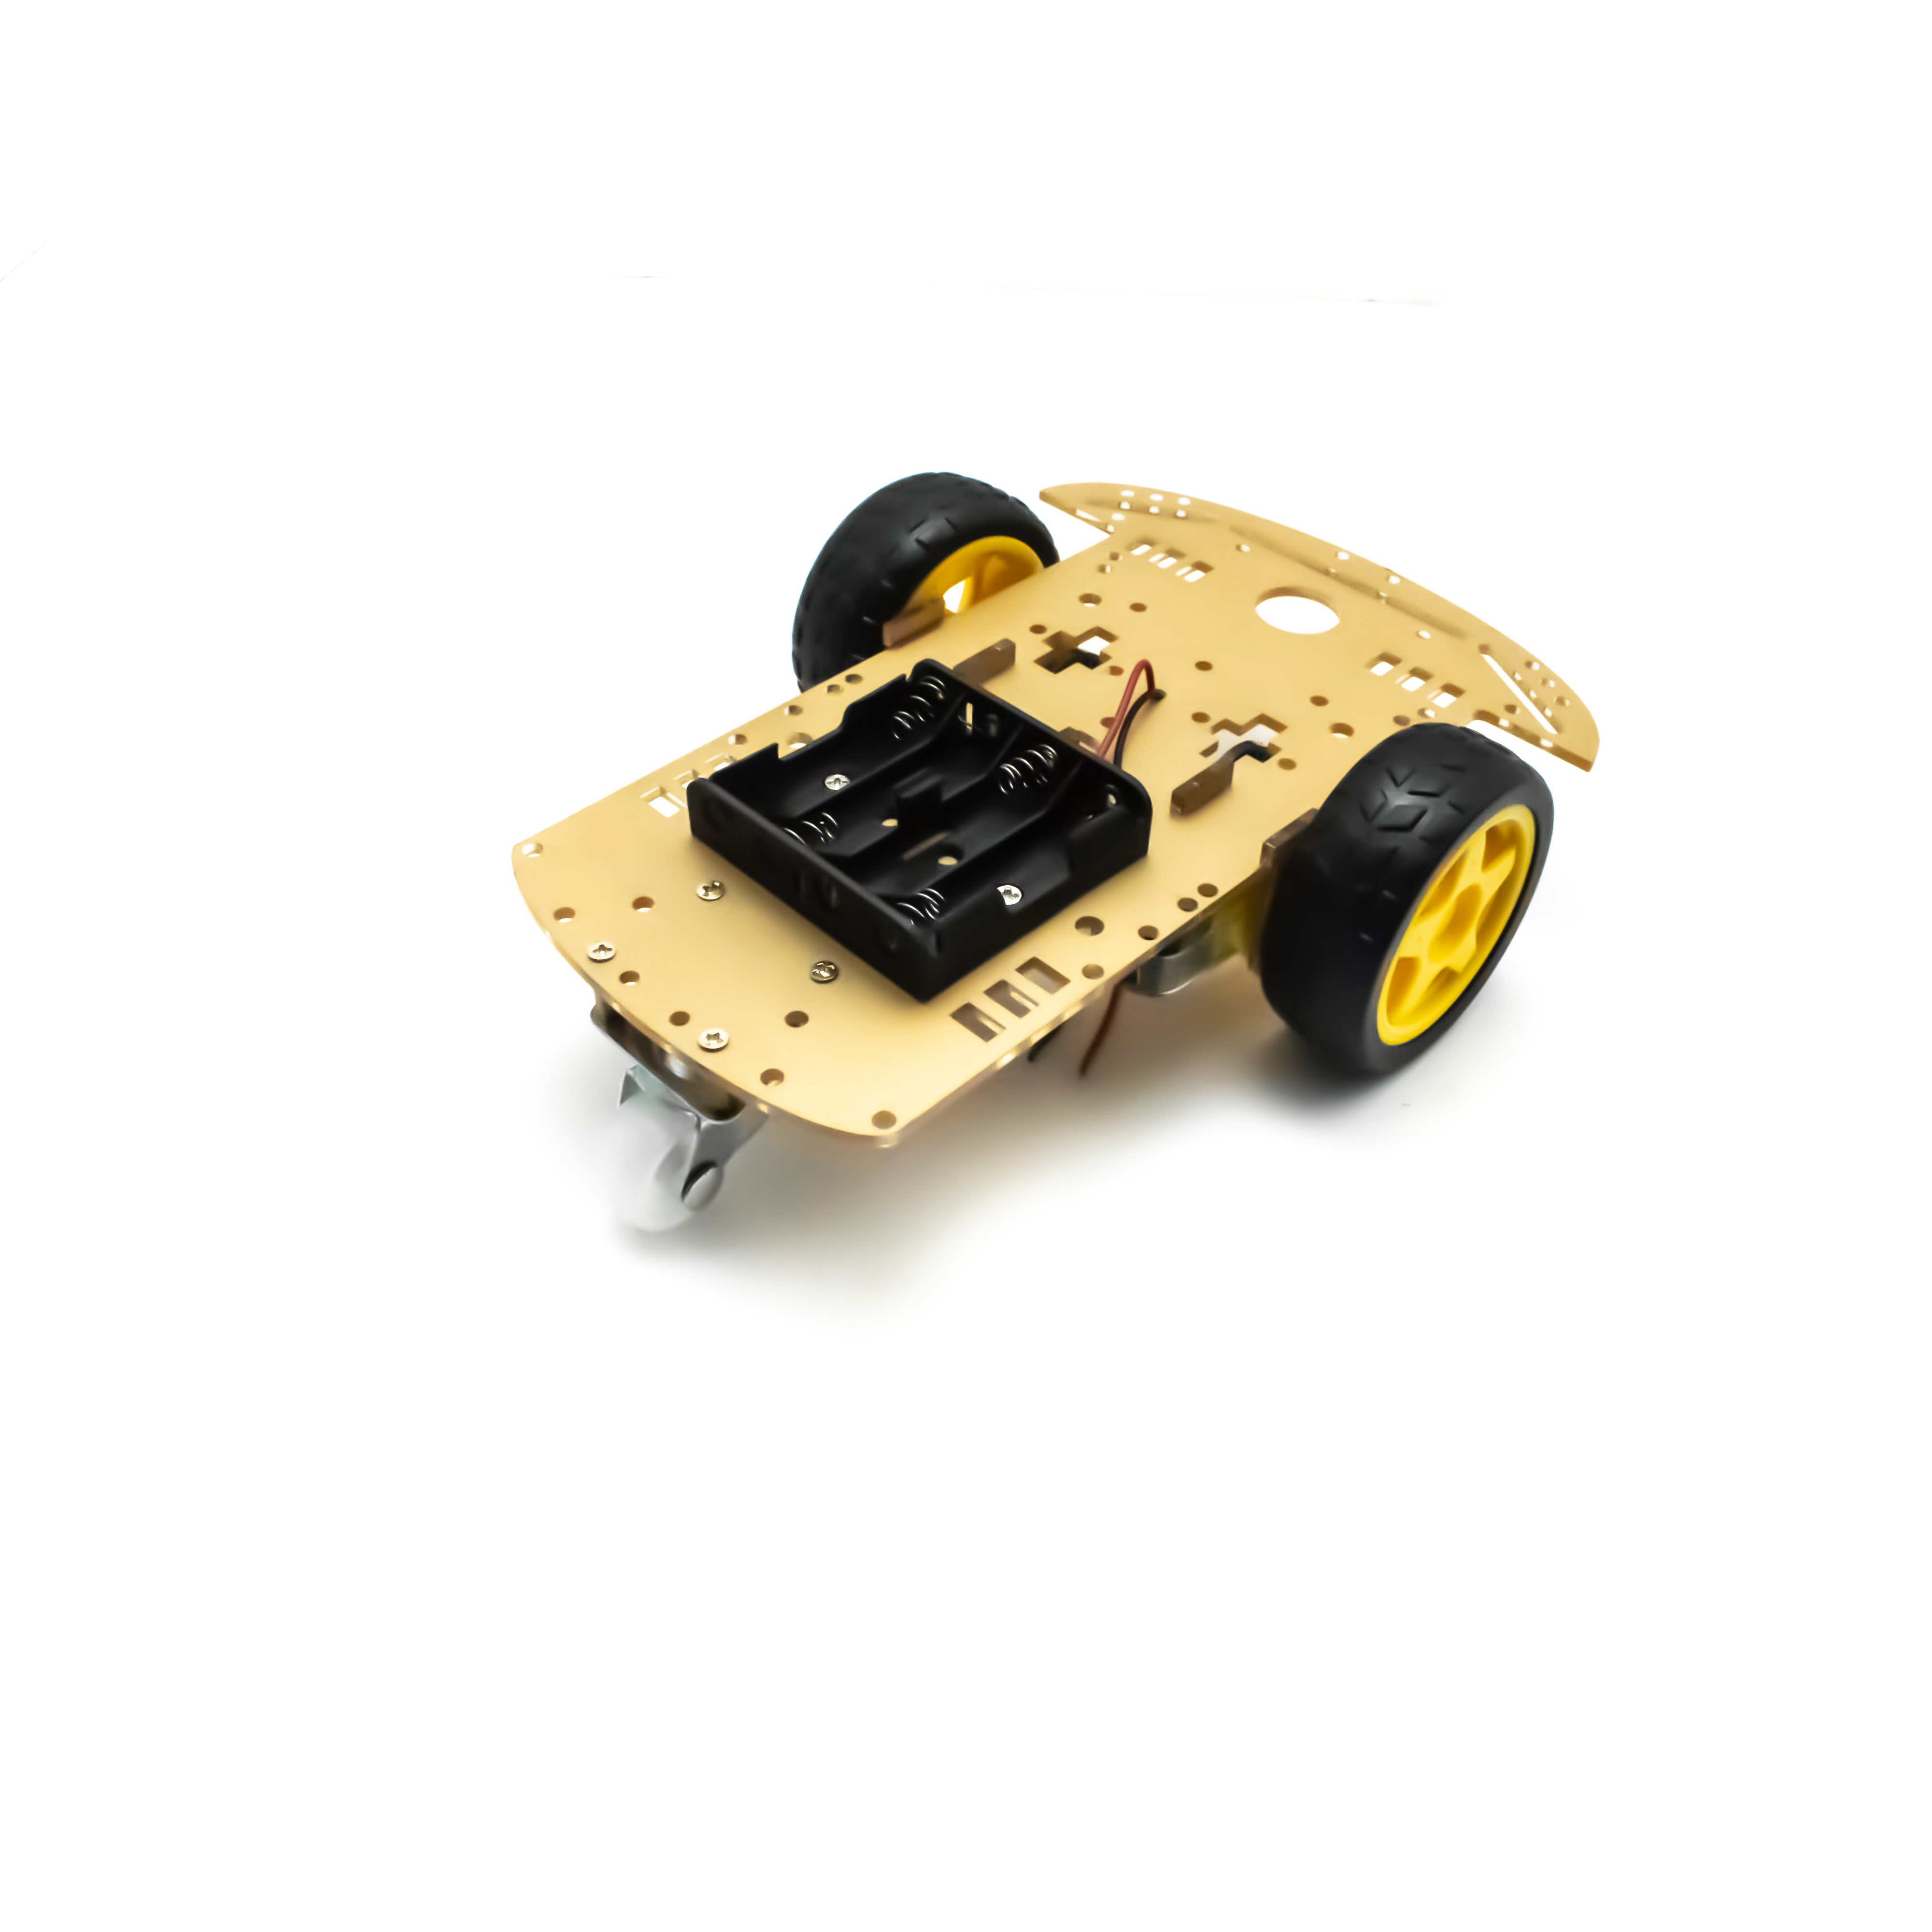 Buy Three Wheel DIY Smart Robot Car Chassis Kit at